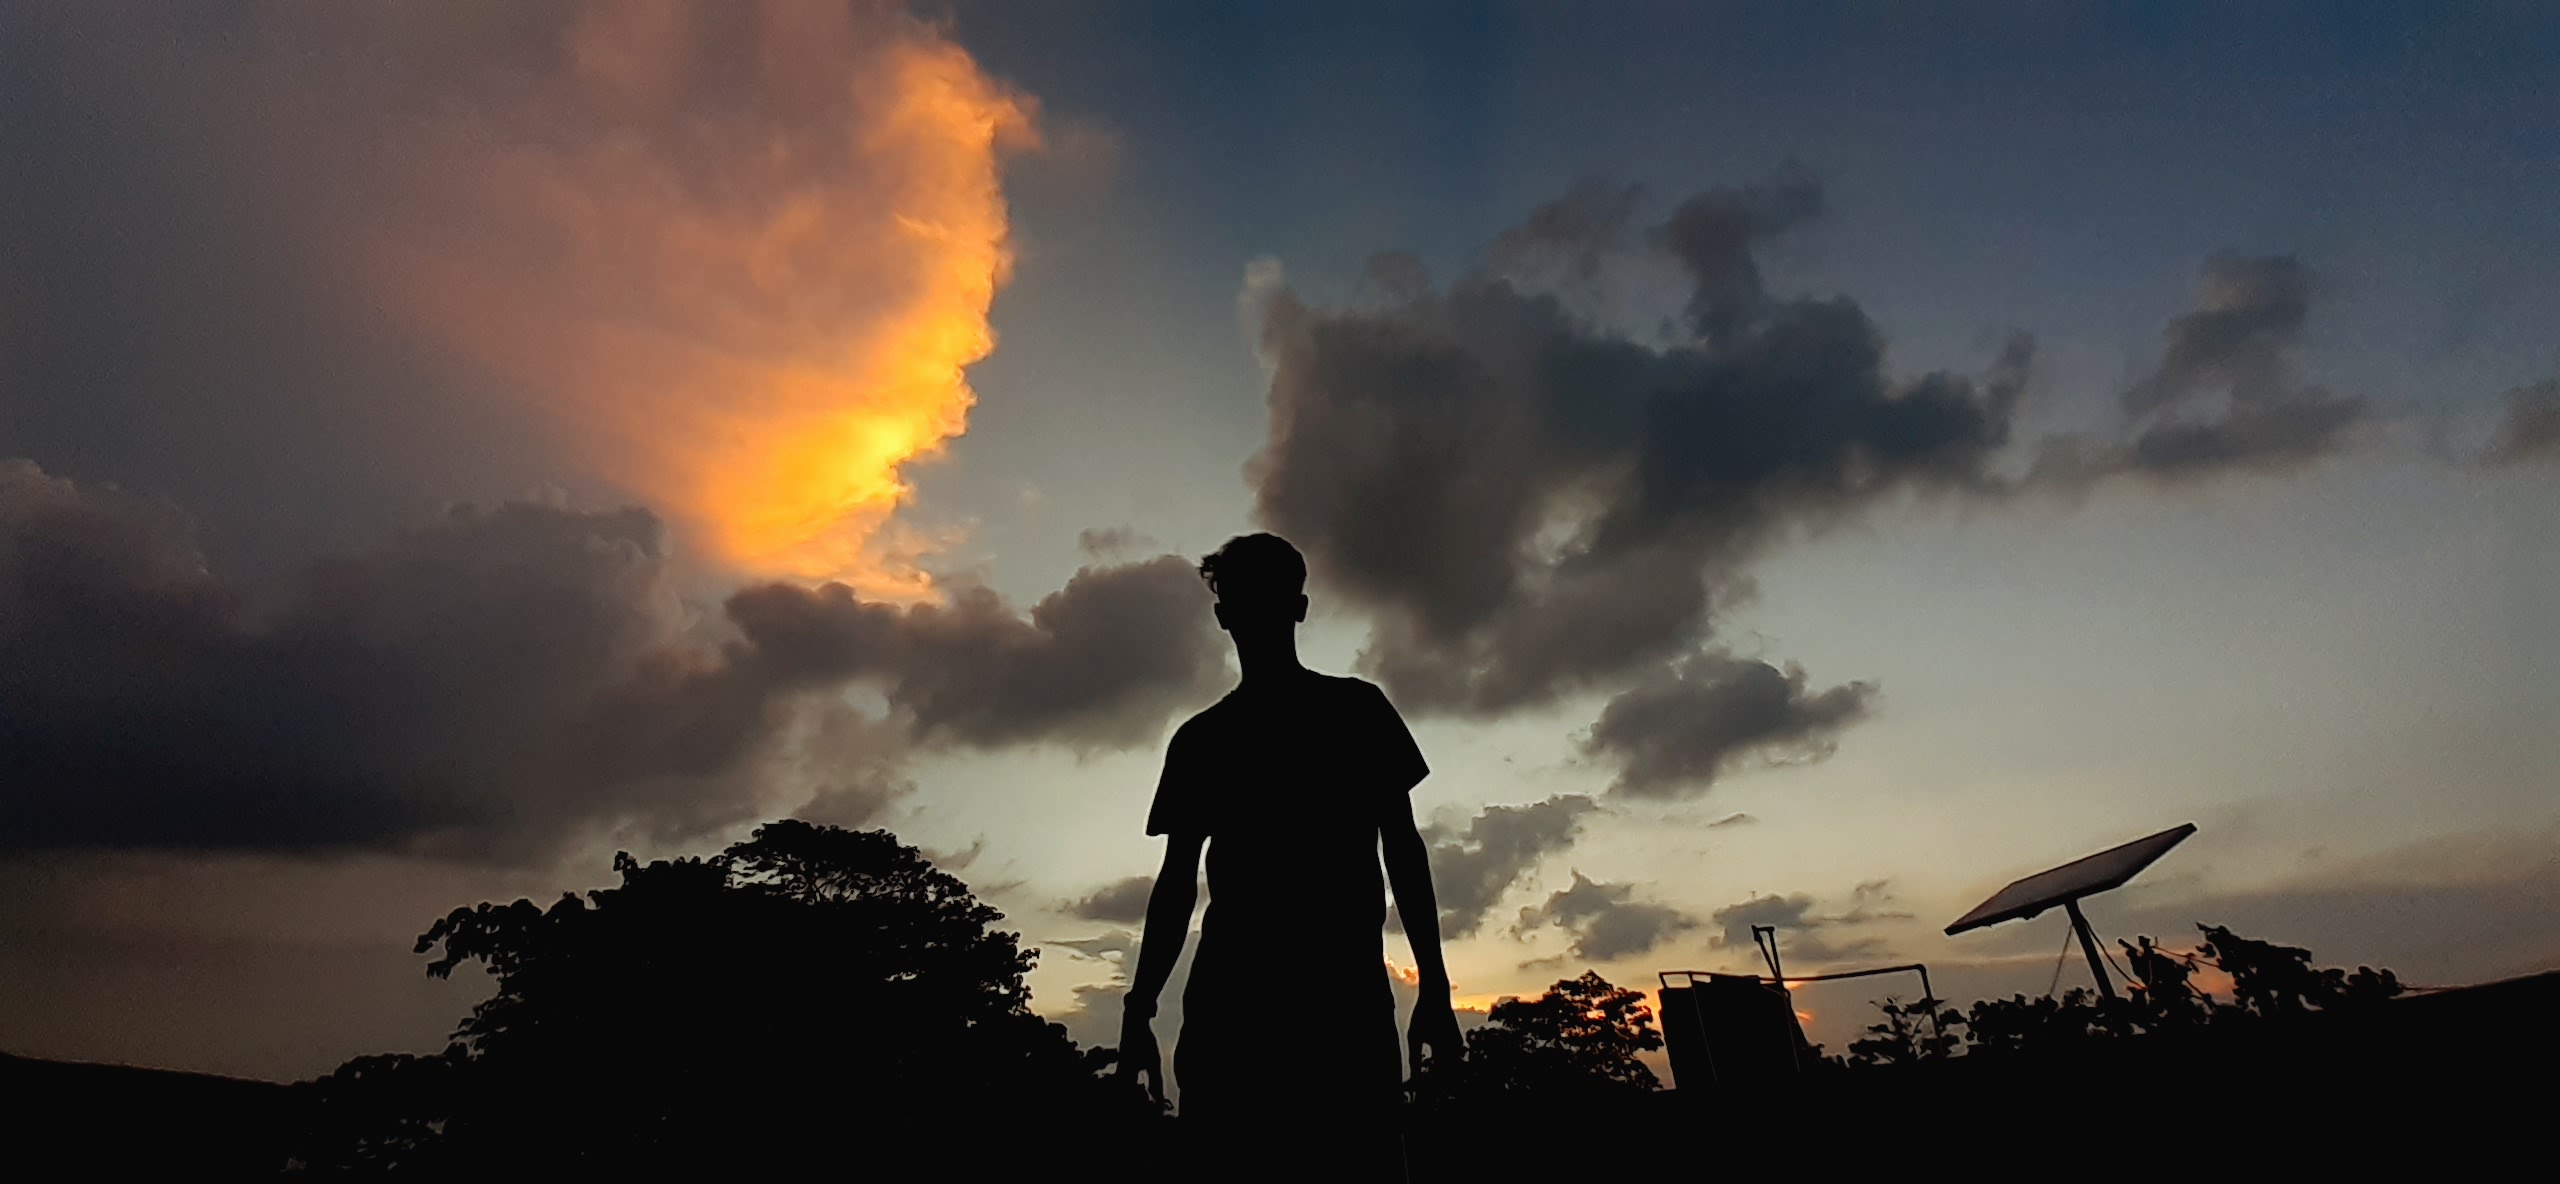 A boy enjoying sunset clouds